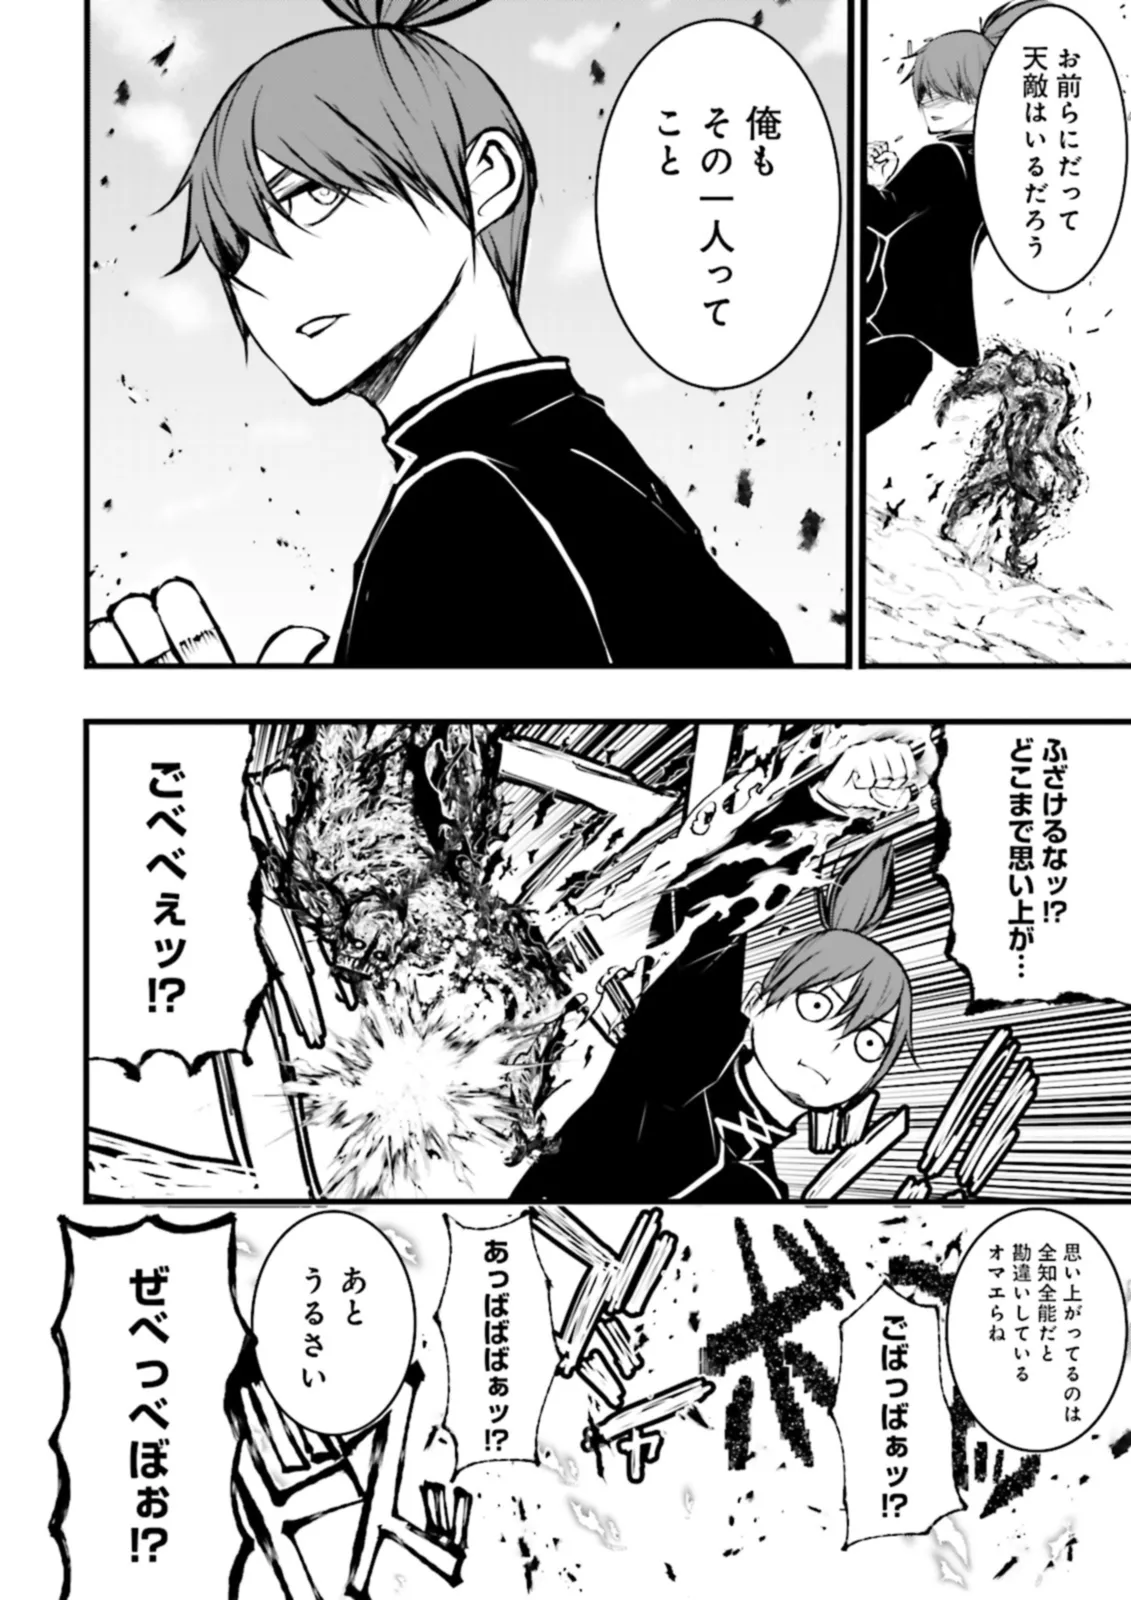 Sukiru Ga Nakereba Level wo Ageru ~ 99 Ga Kansuto No Sekai De Reberu 800 Man Kara Sutato ~ - Chapter 36.2 - Page 2